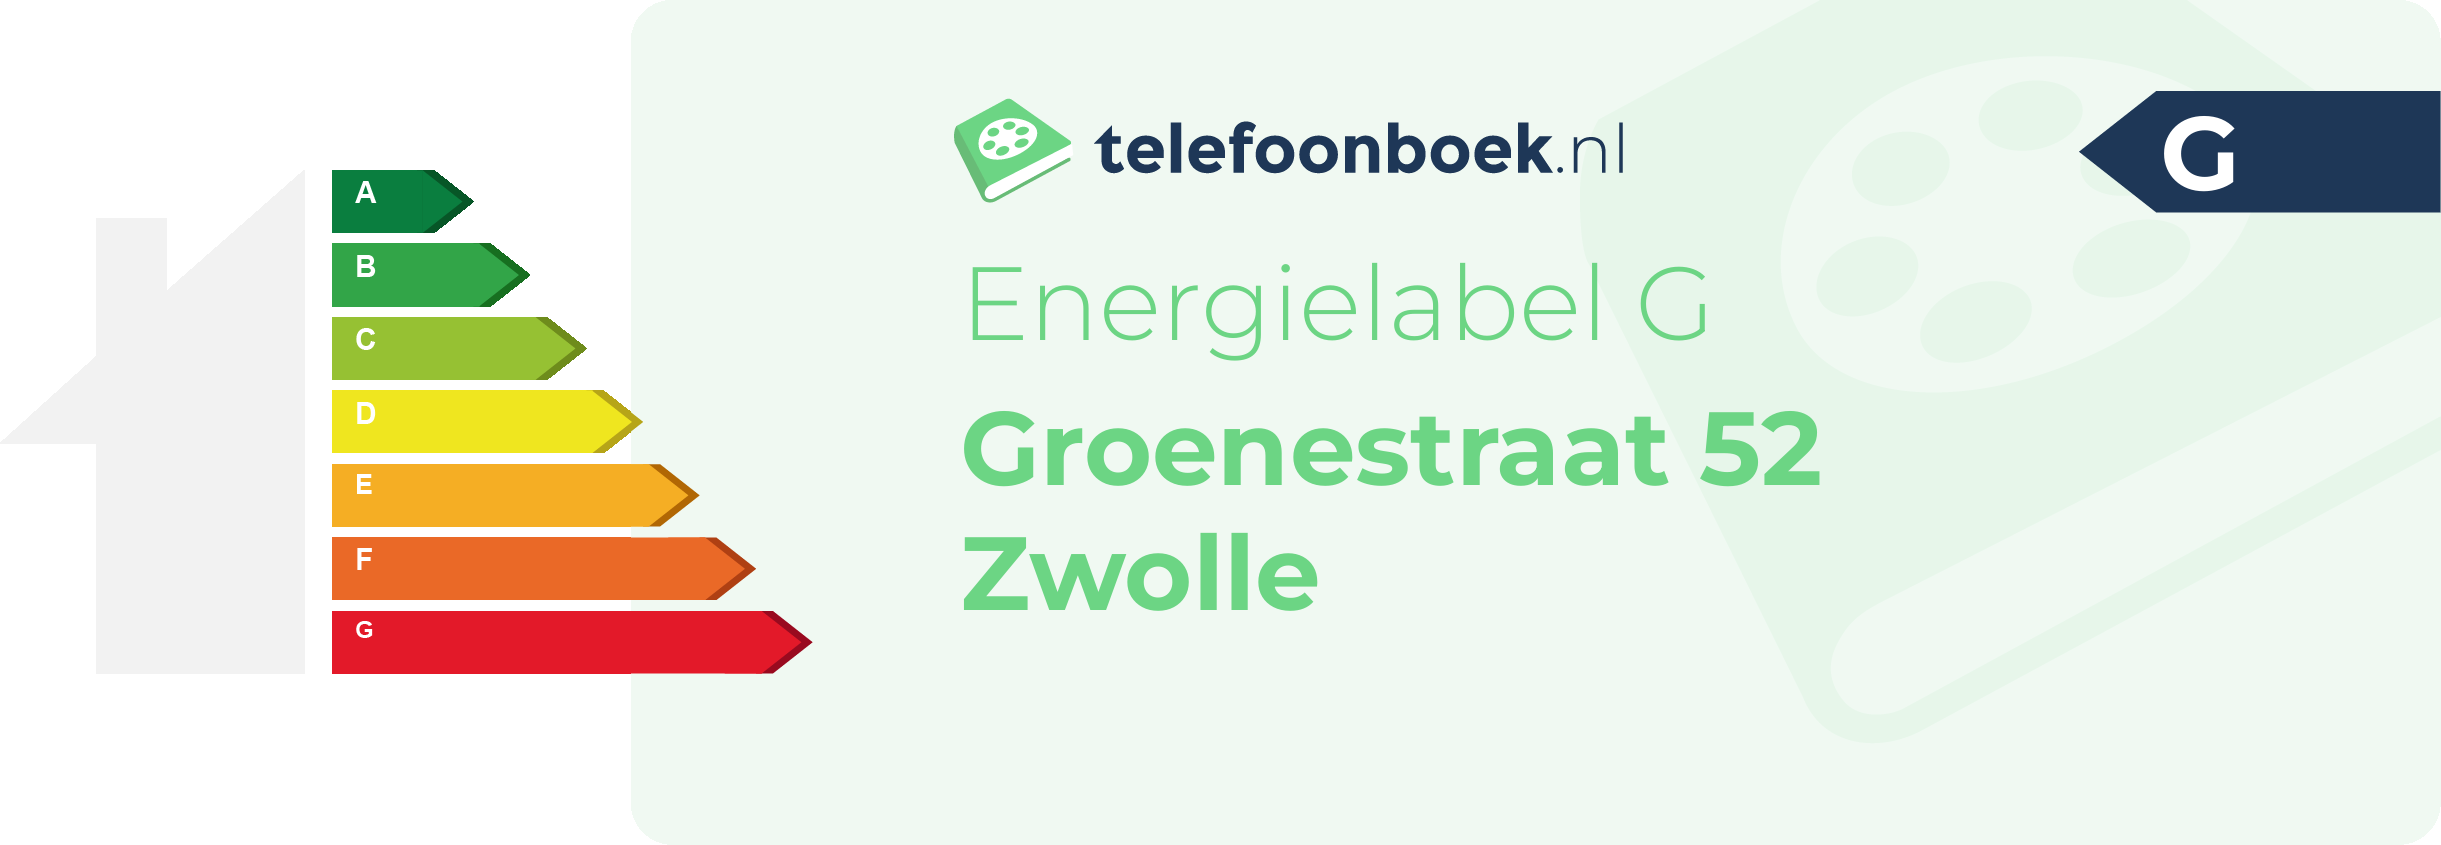 Energielabel Groenestraat 52 Zwolle